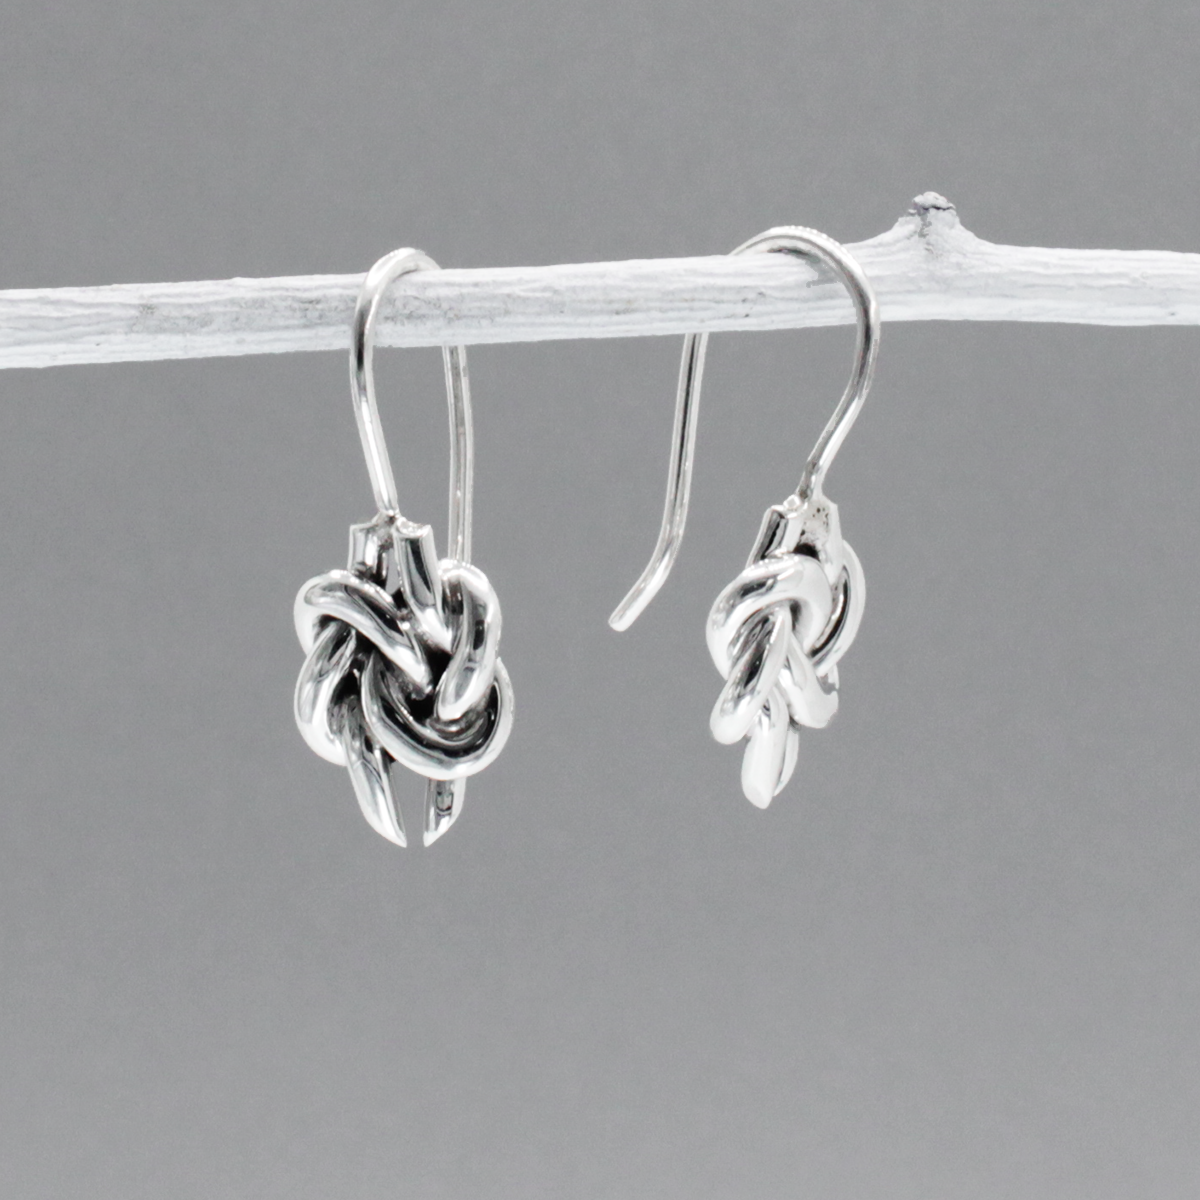 Aran - Double Knot Silver Earrings - Dangle